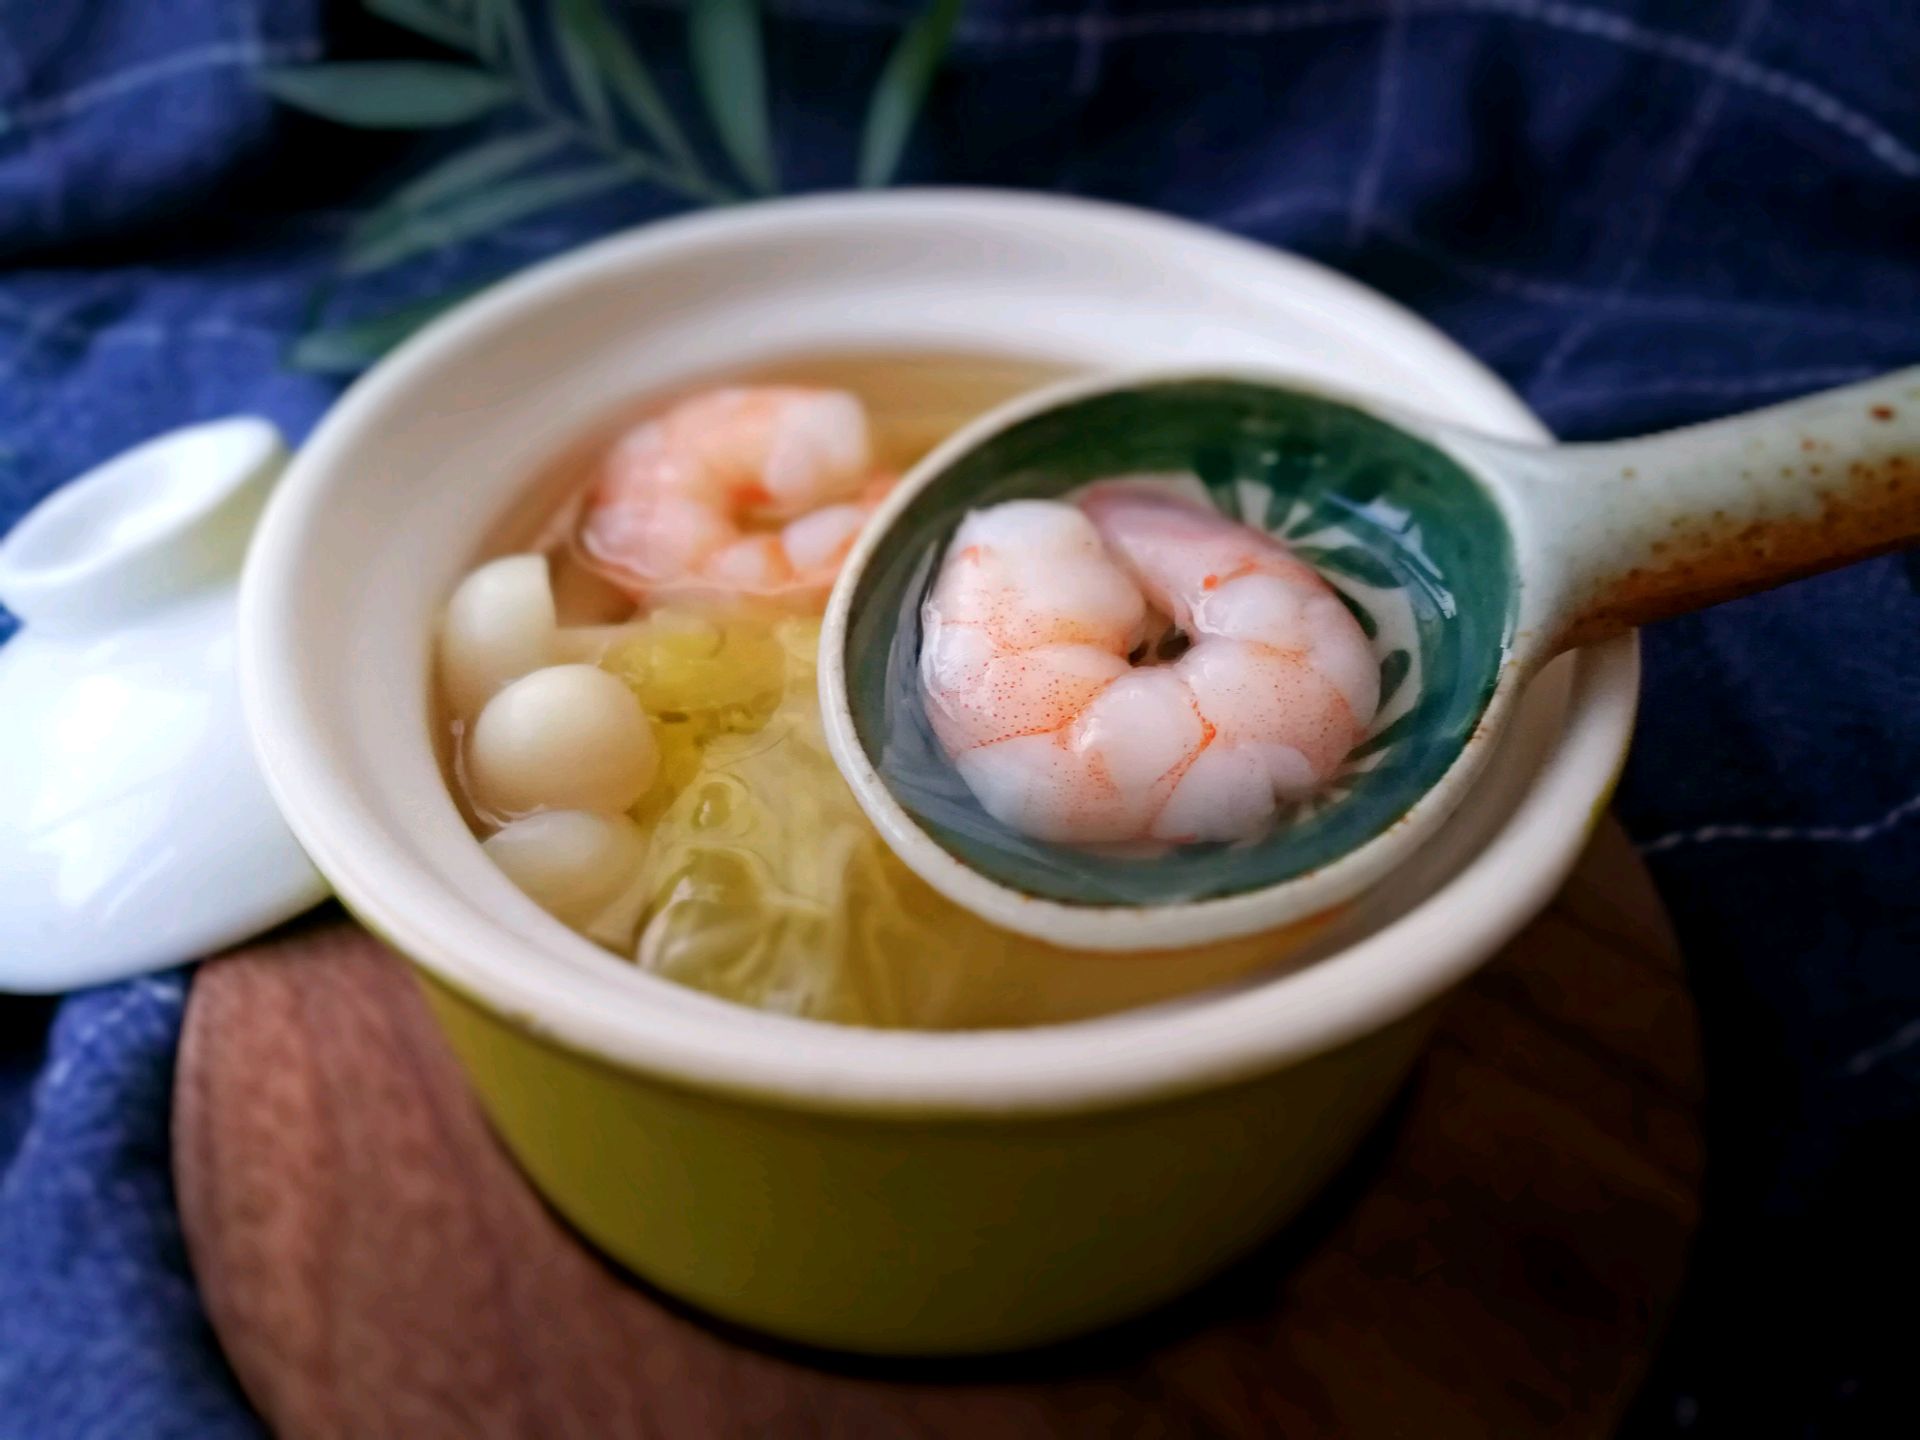 无油低卡营养-虾仁海鲜菇烧白菜汤